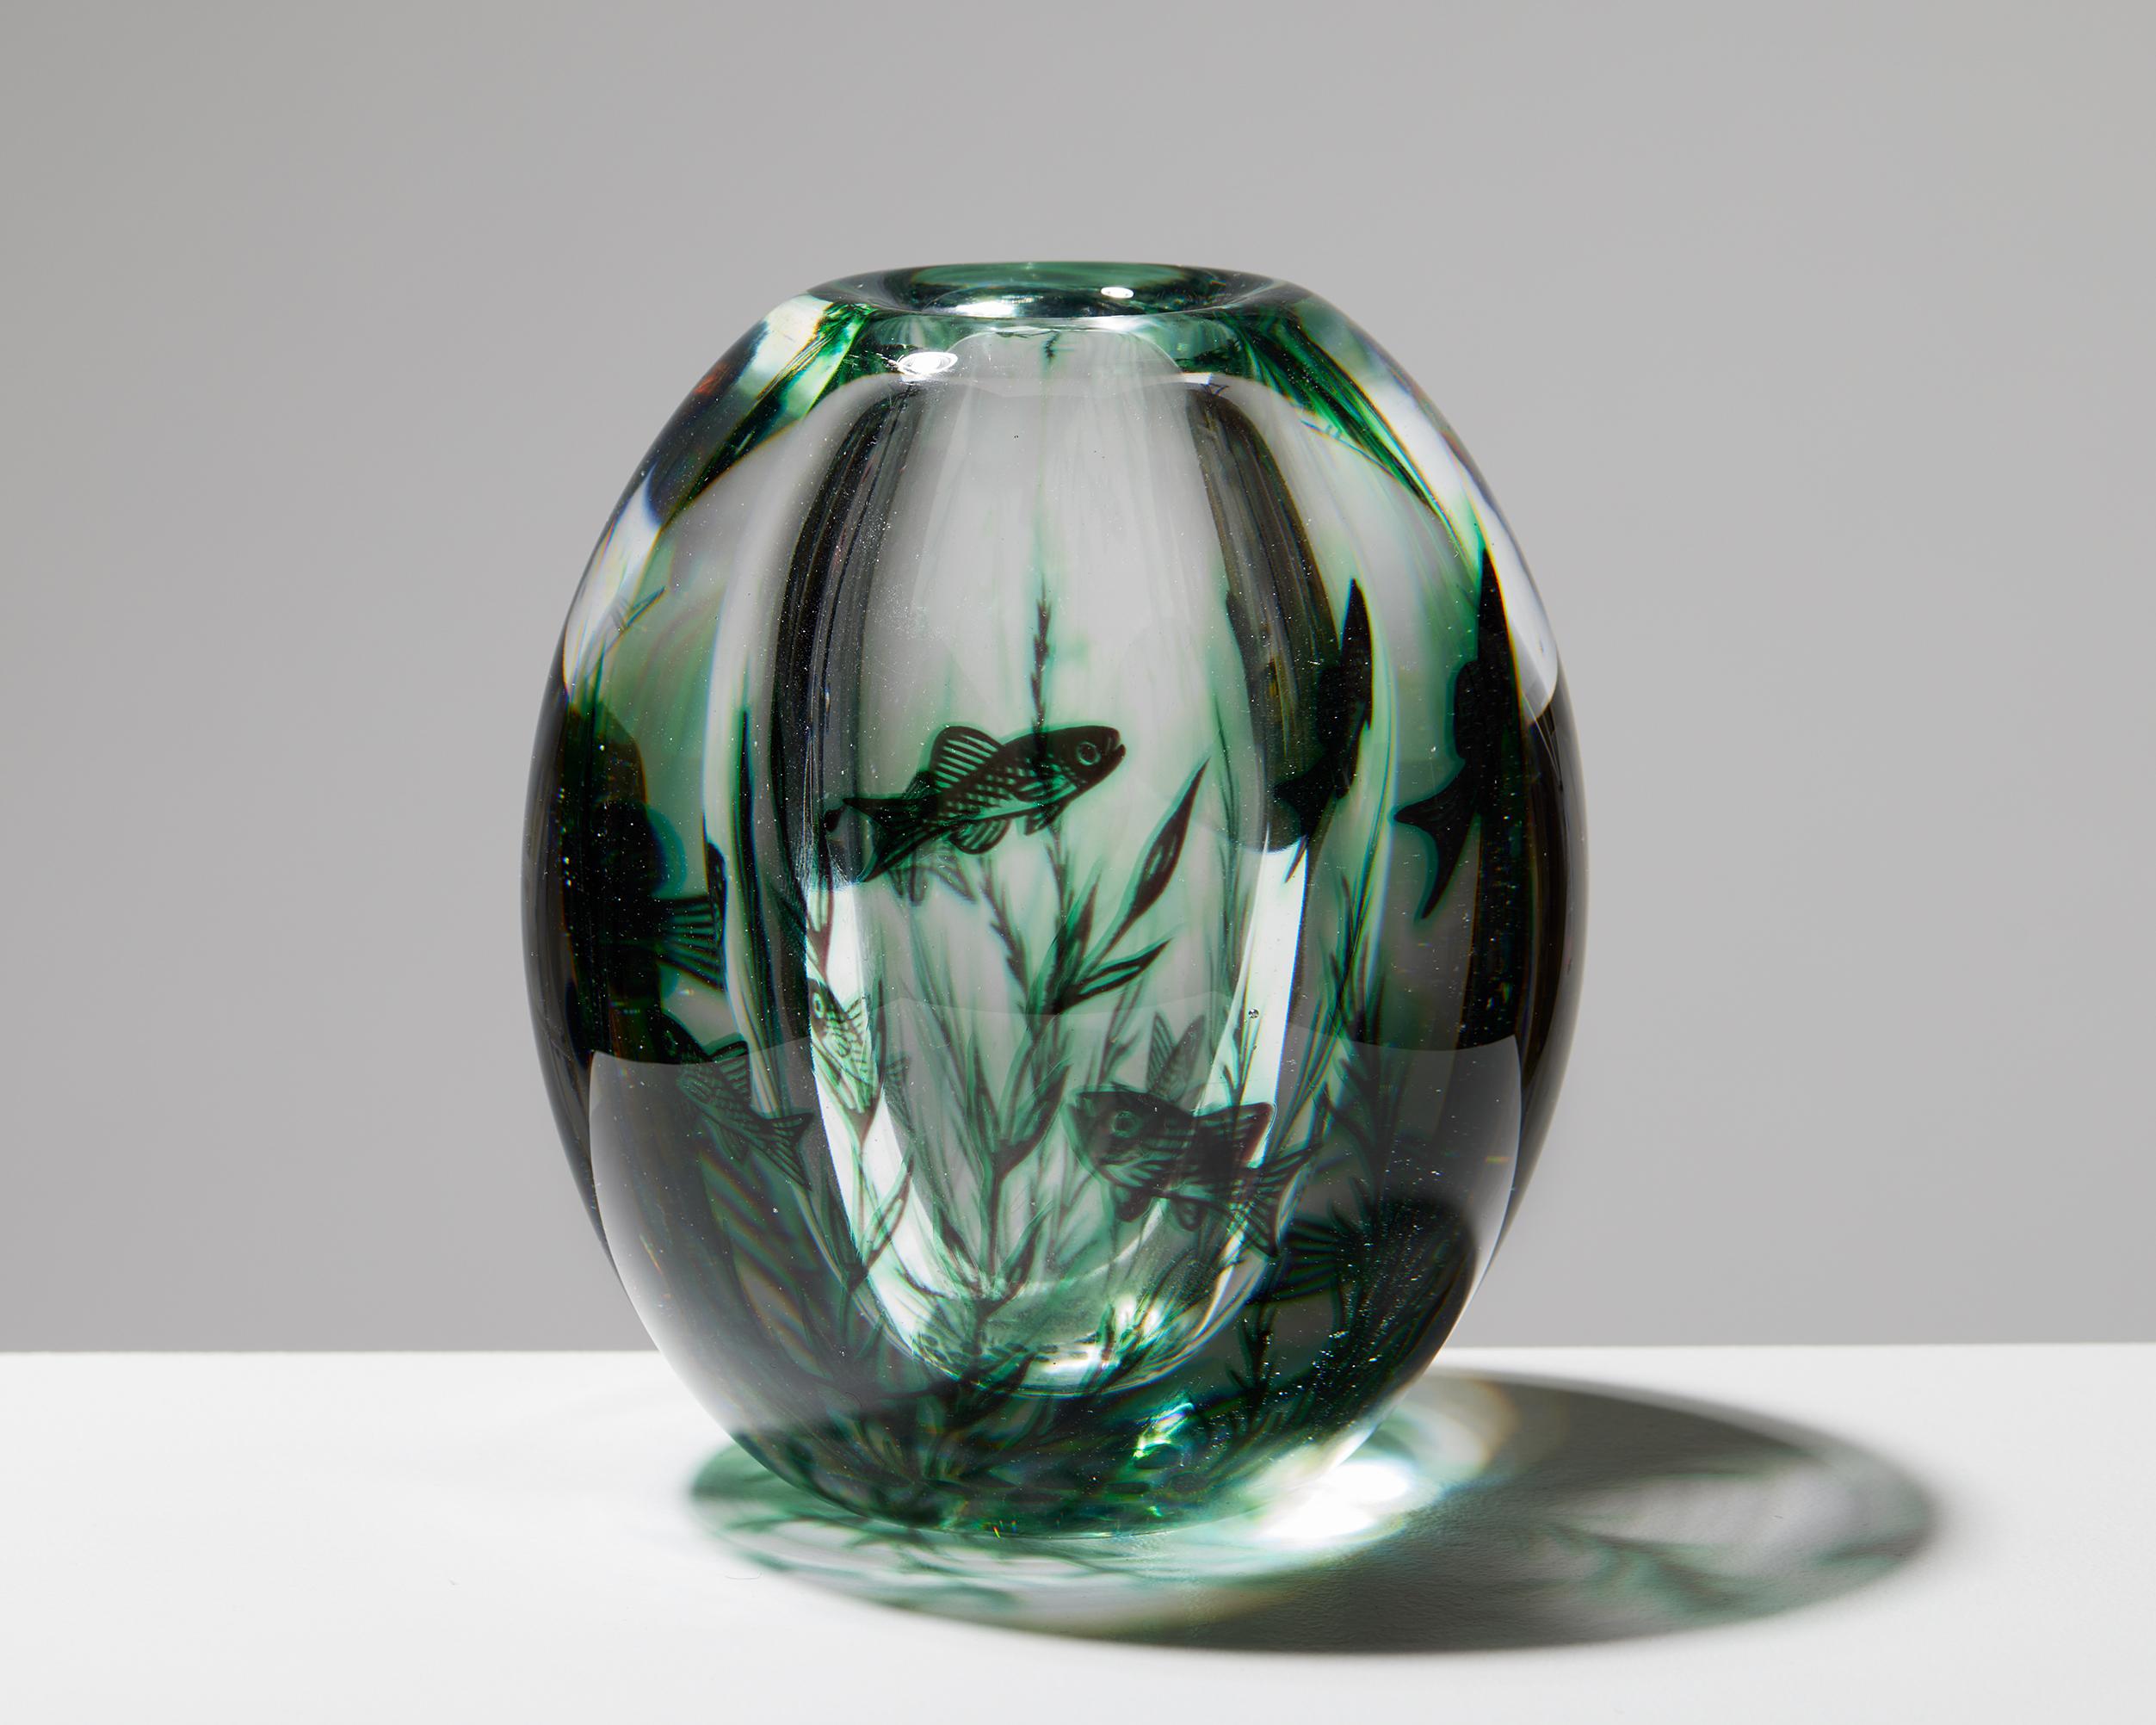 Vase designed by Edward Hald for Orrefors,
Sweden. 1940s.
Glass.

Signed.

Measures: Height: 13 cm / 5